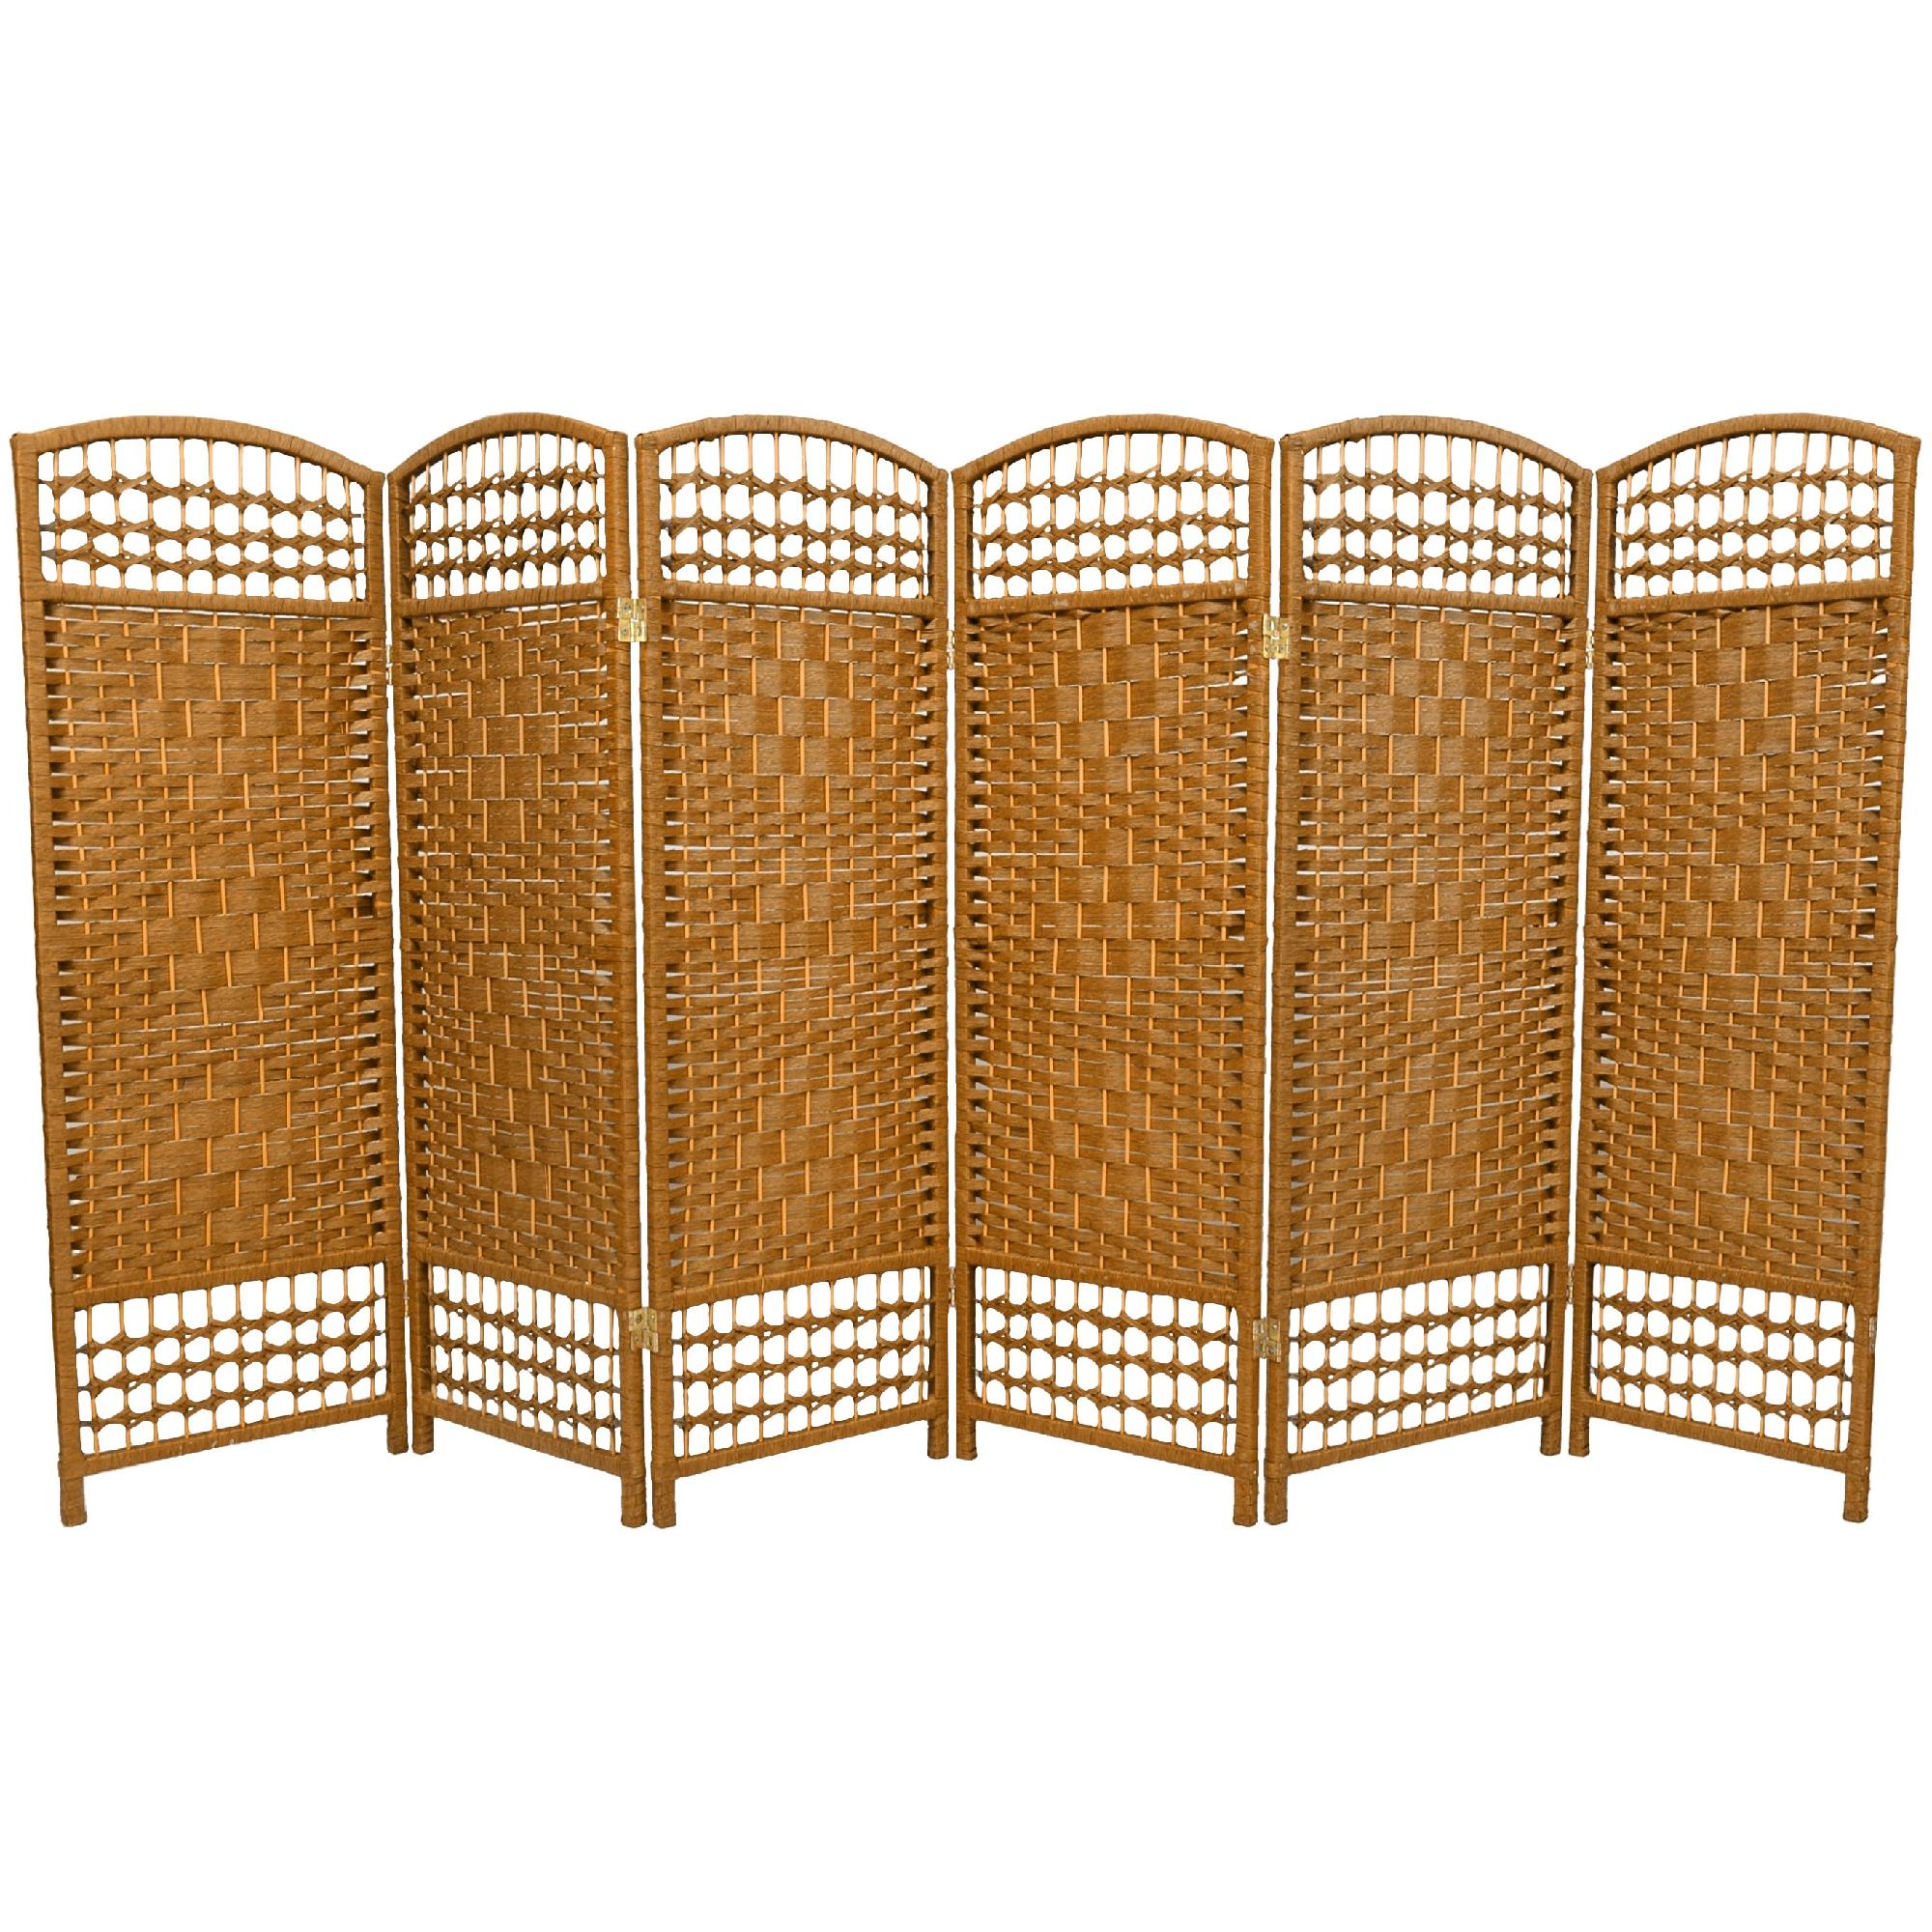 Oriental Furniture 4 ft. Tall Fiber Weave Room Divider - 6 Panel - Light Beige